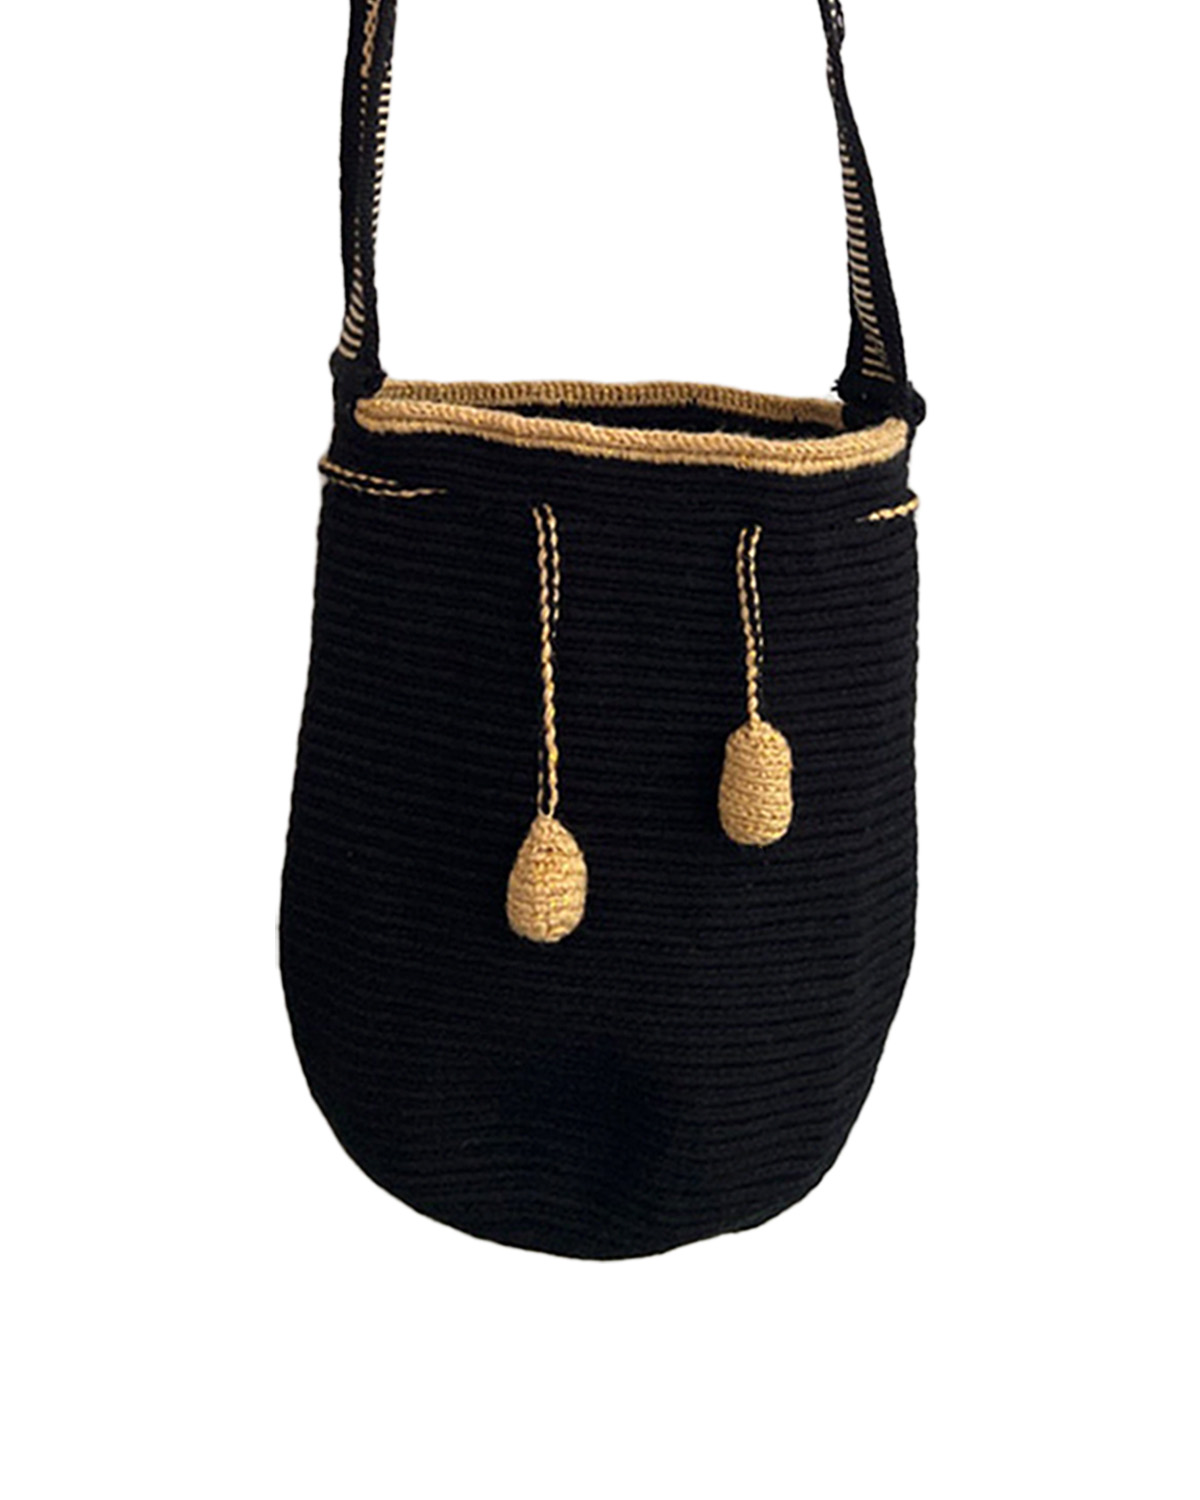 Black & Gold - Medium - Essentials Bag 2